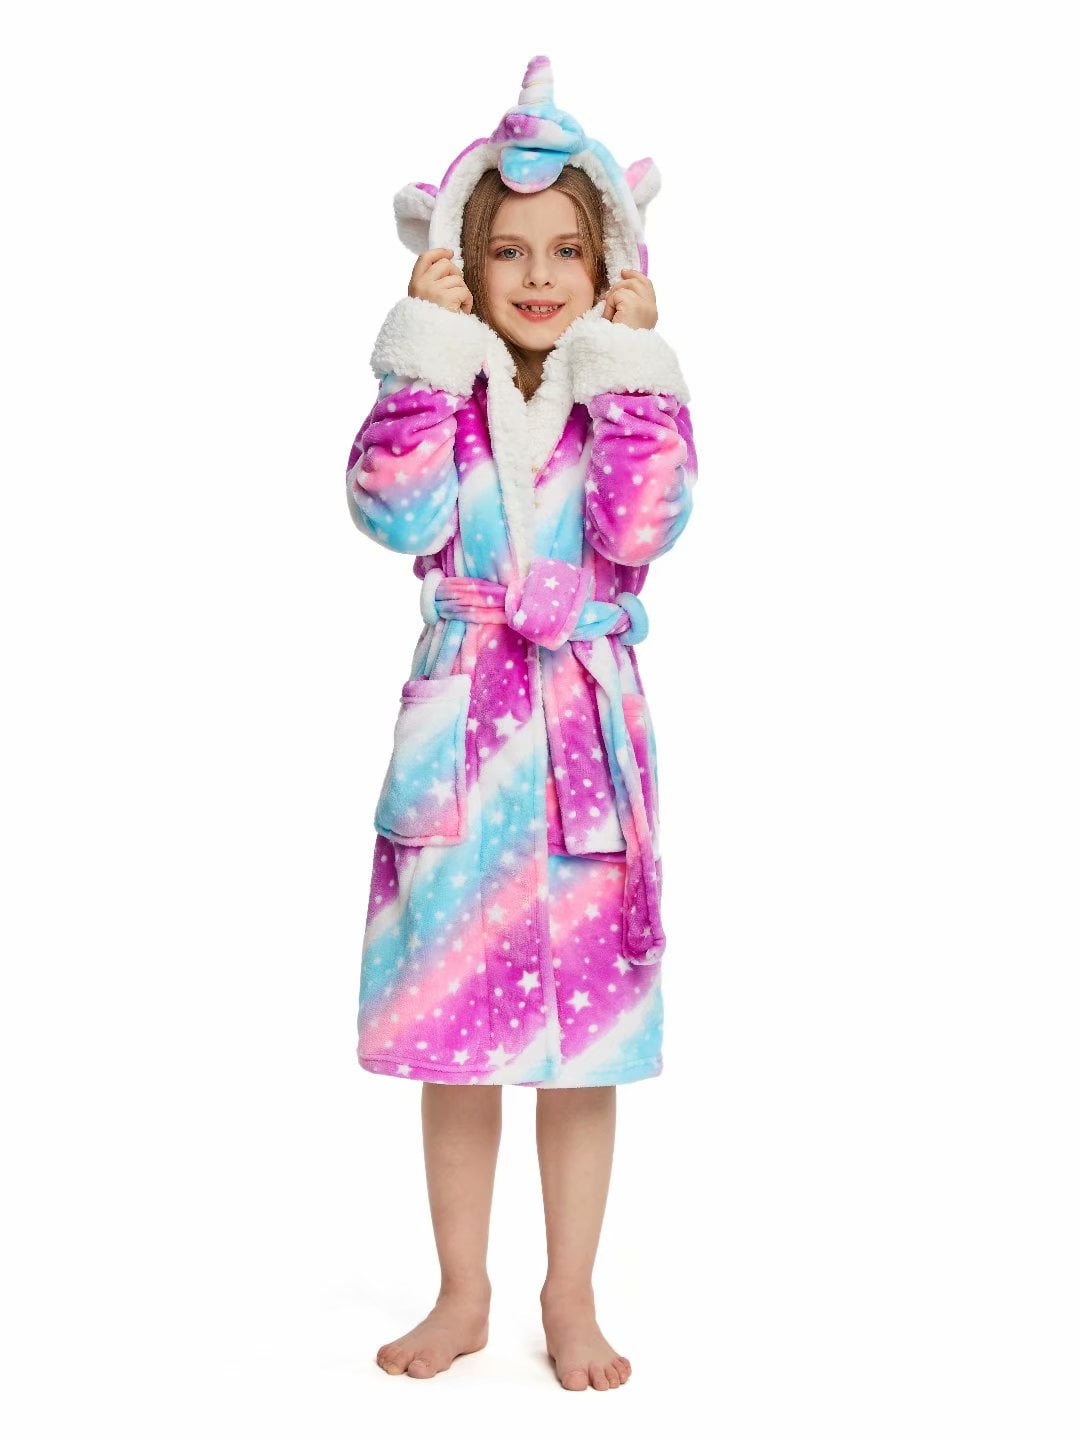 UsHigh Kids Unicorn Bathrobe Flannel Soft Sleepwear Gift Comfy Four Season